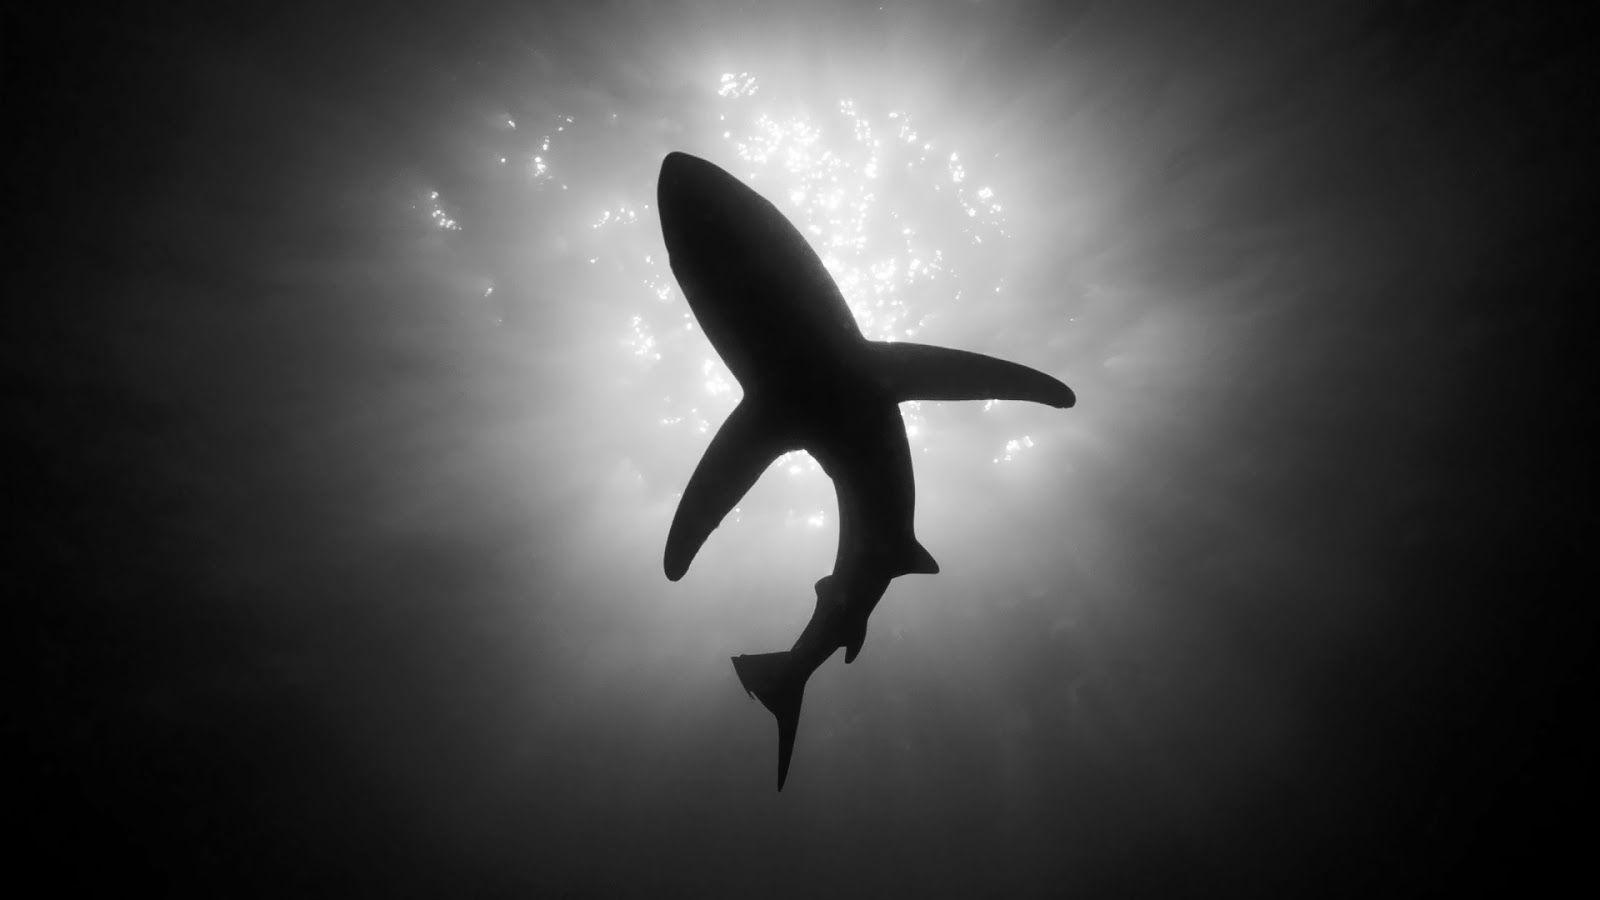 Black and White Shark Logo - Black And White Animal Photography Black and white shark animals ...